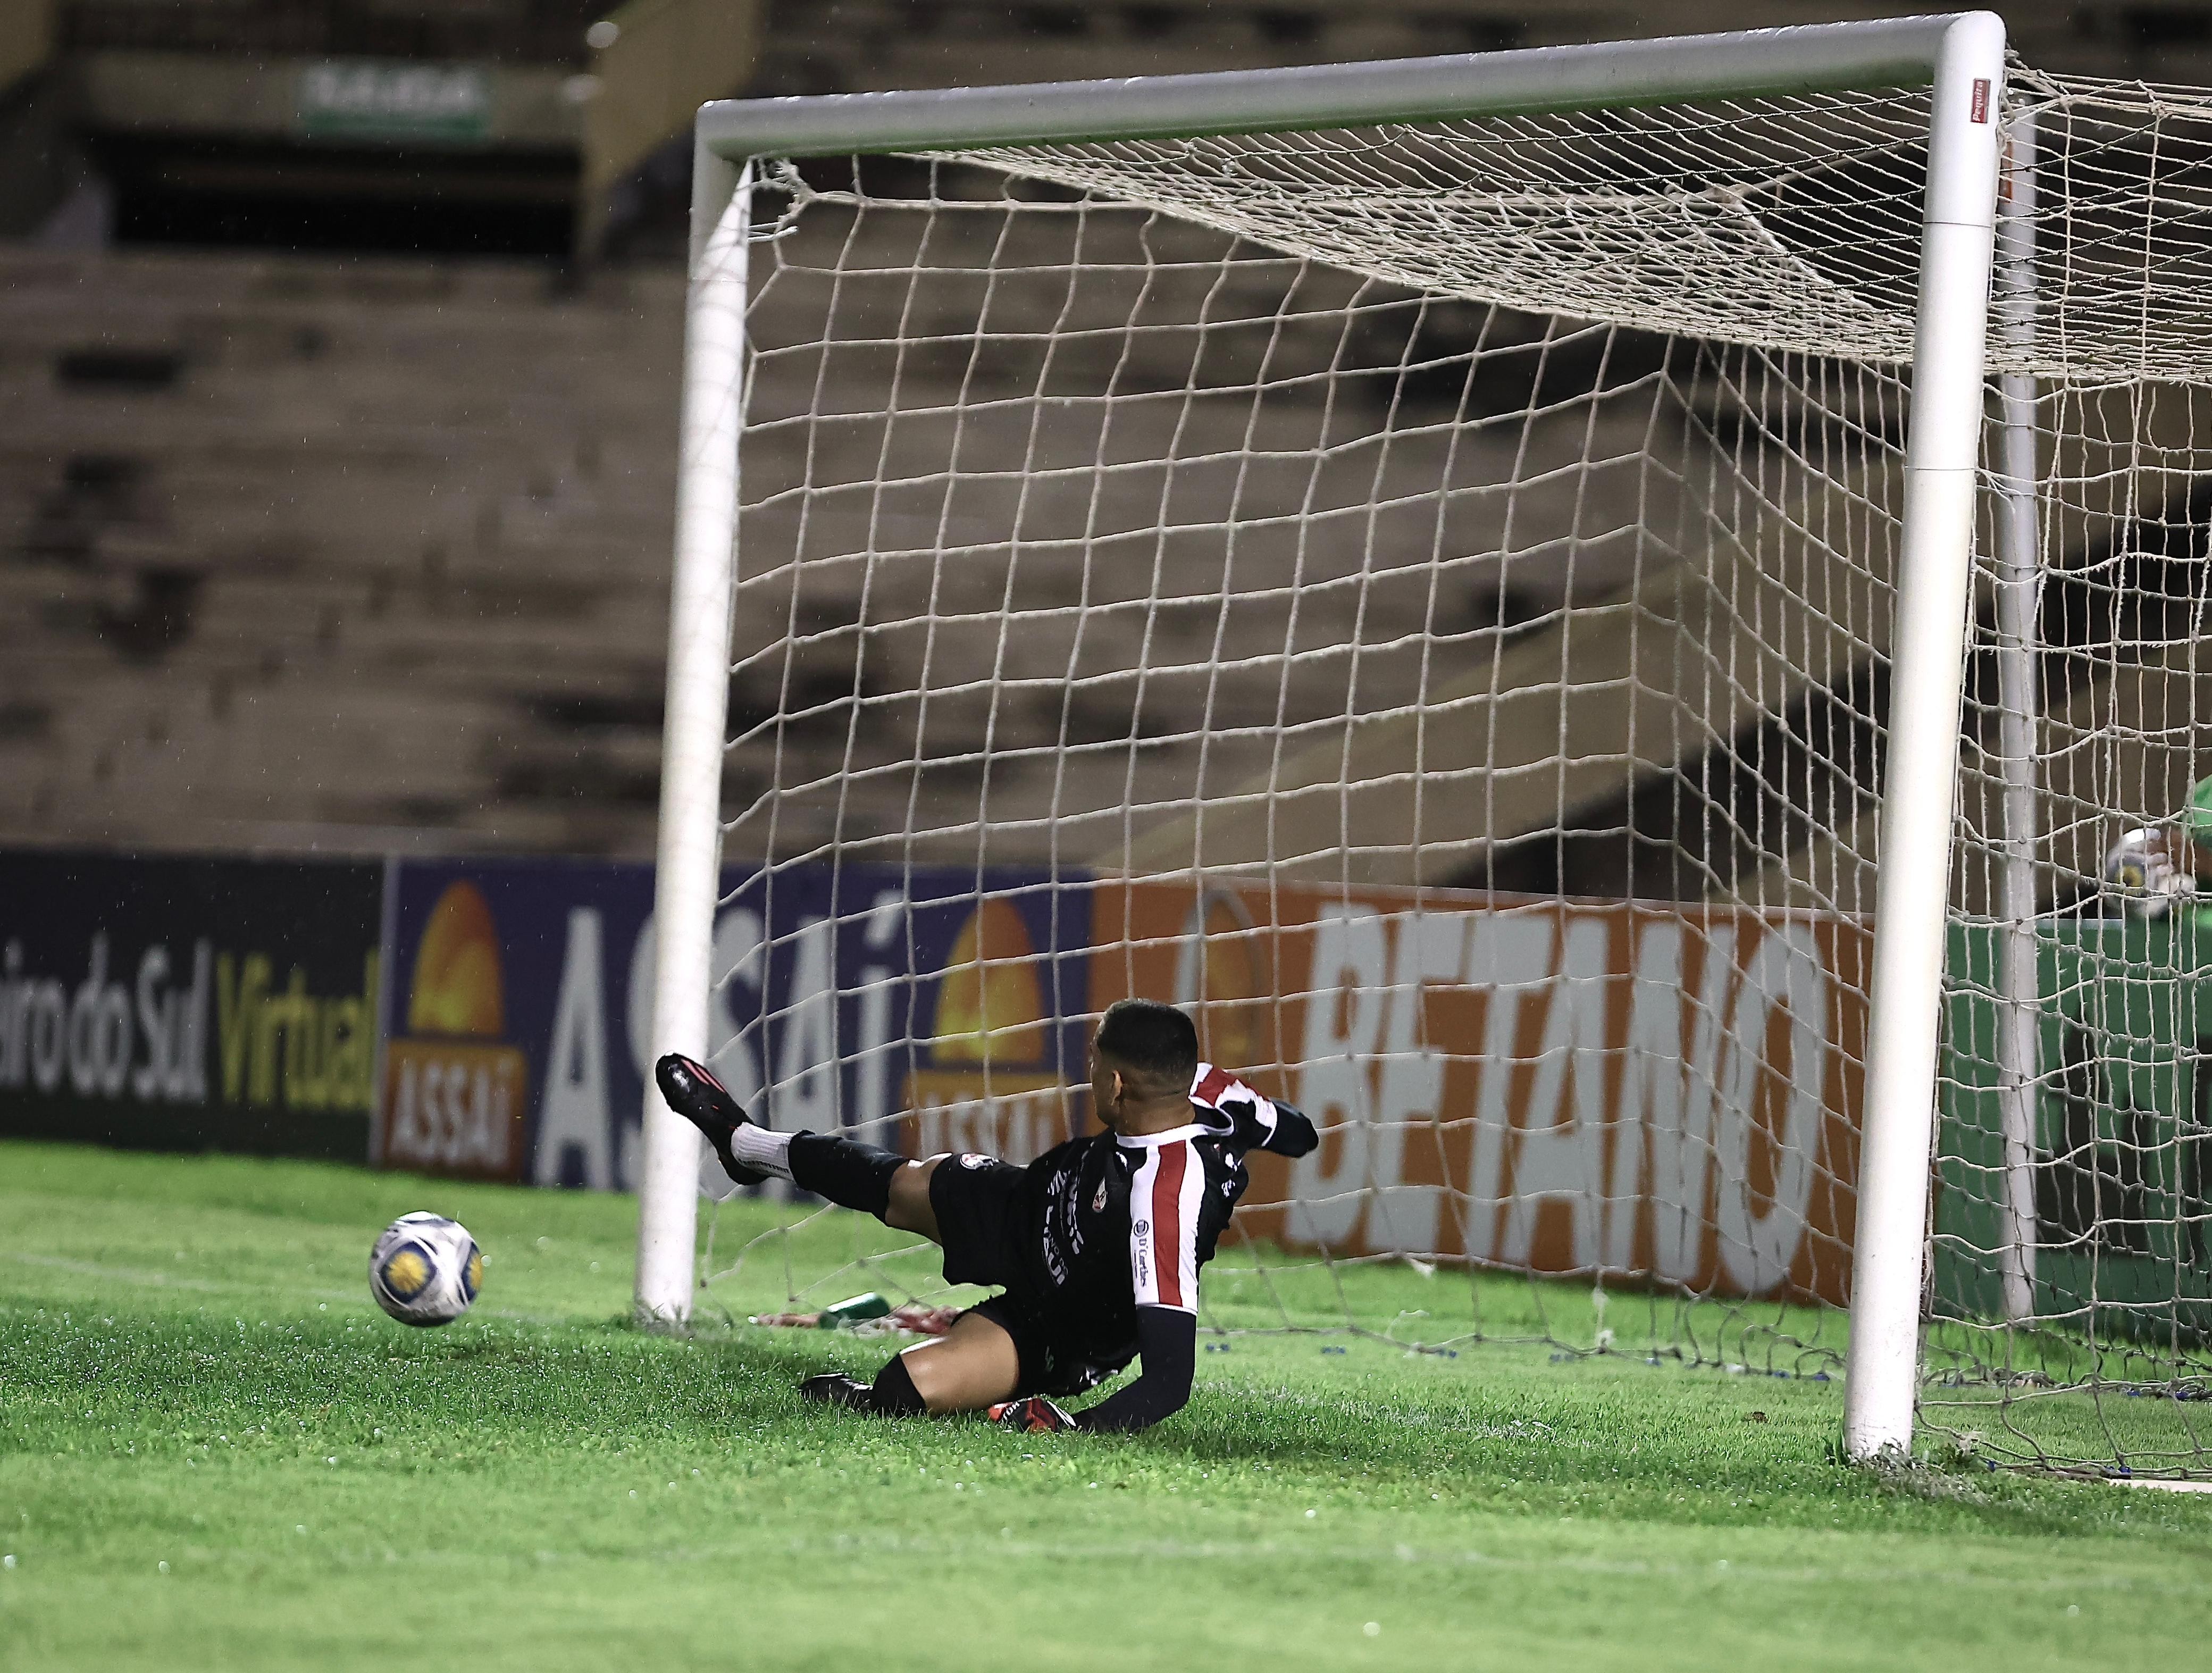 Copa do Nordeste: goleiro defende pênalti, e time faz gol da vitória 26 segundos depois; assista